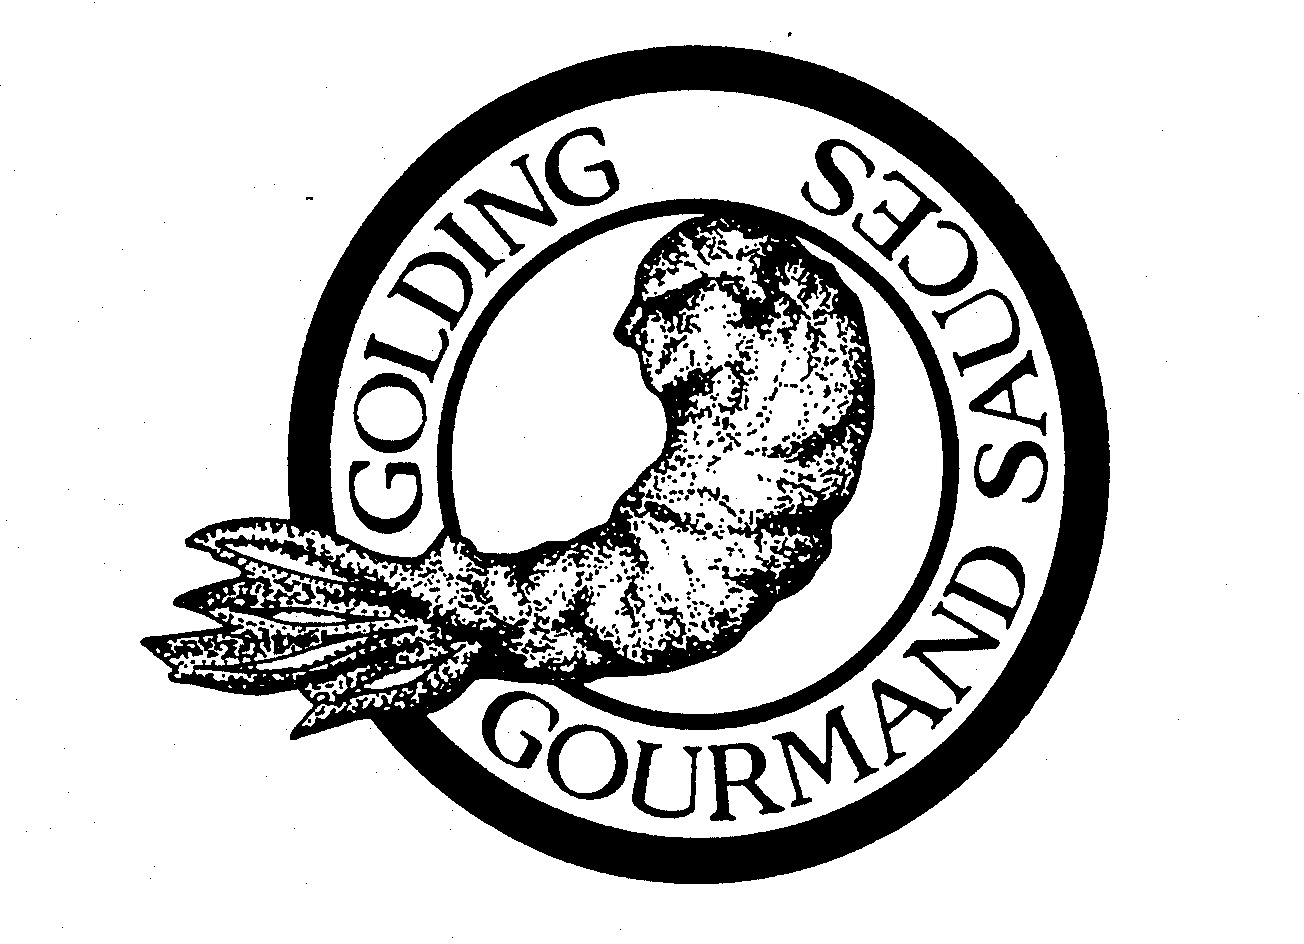  GOLDING GOURMAND SAUCES